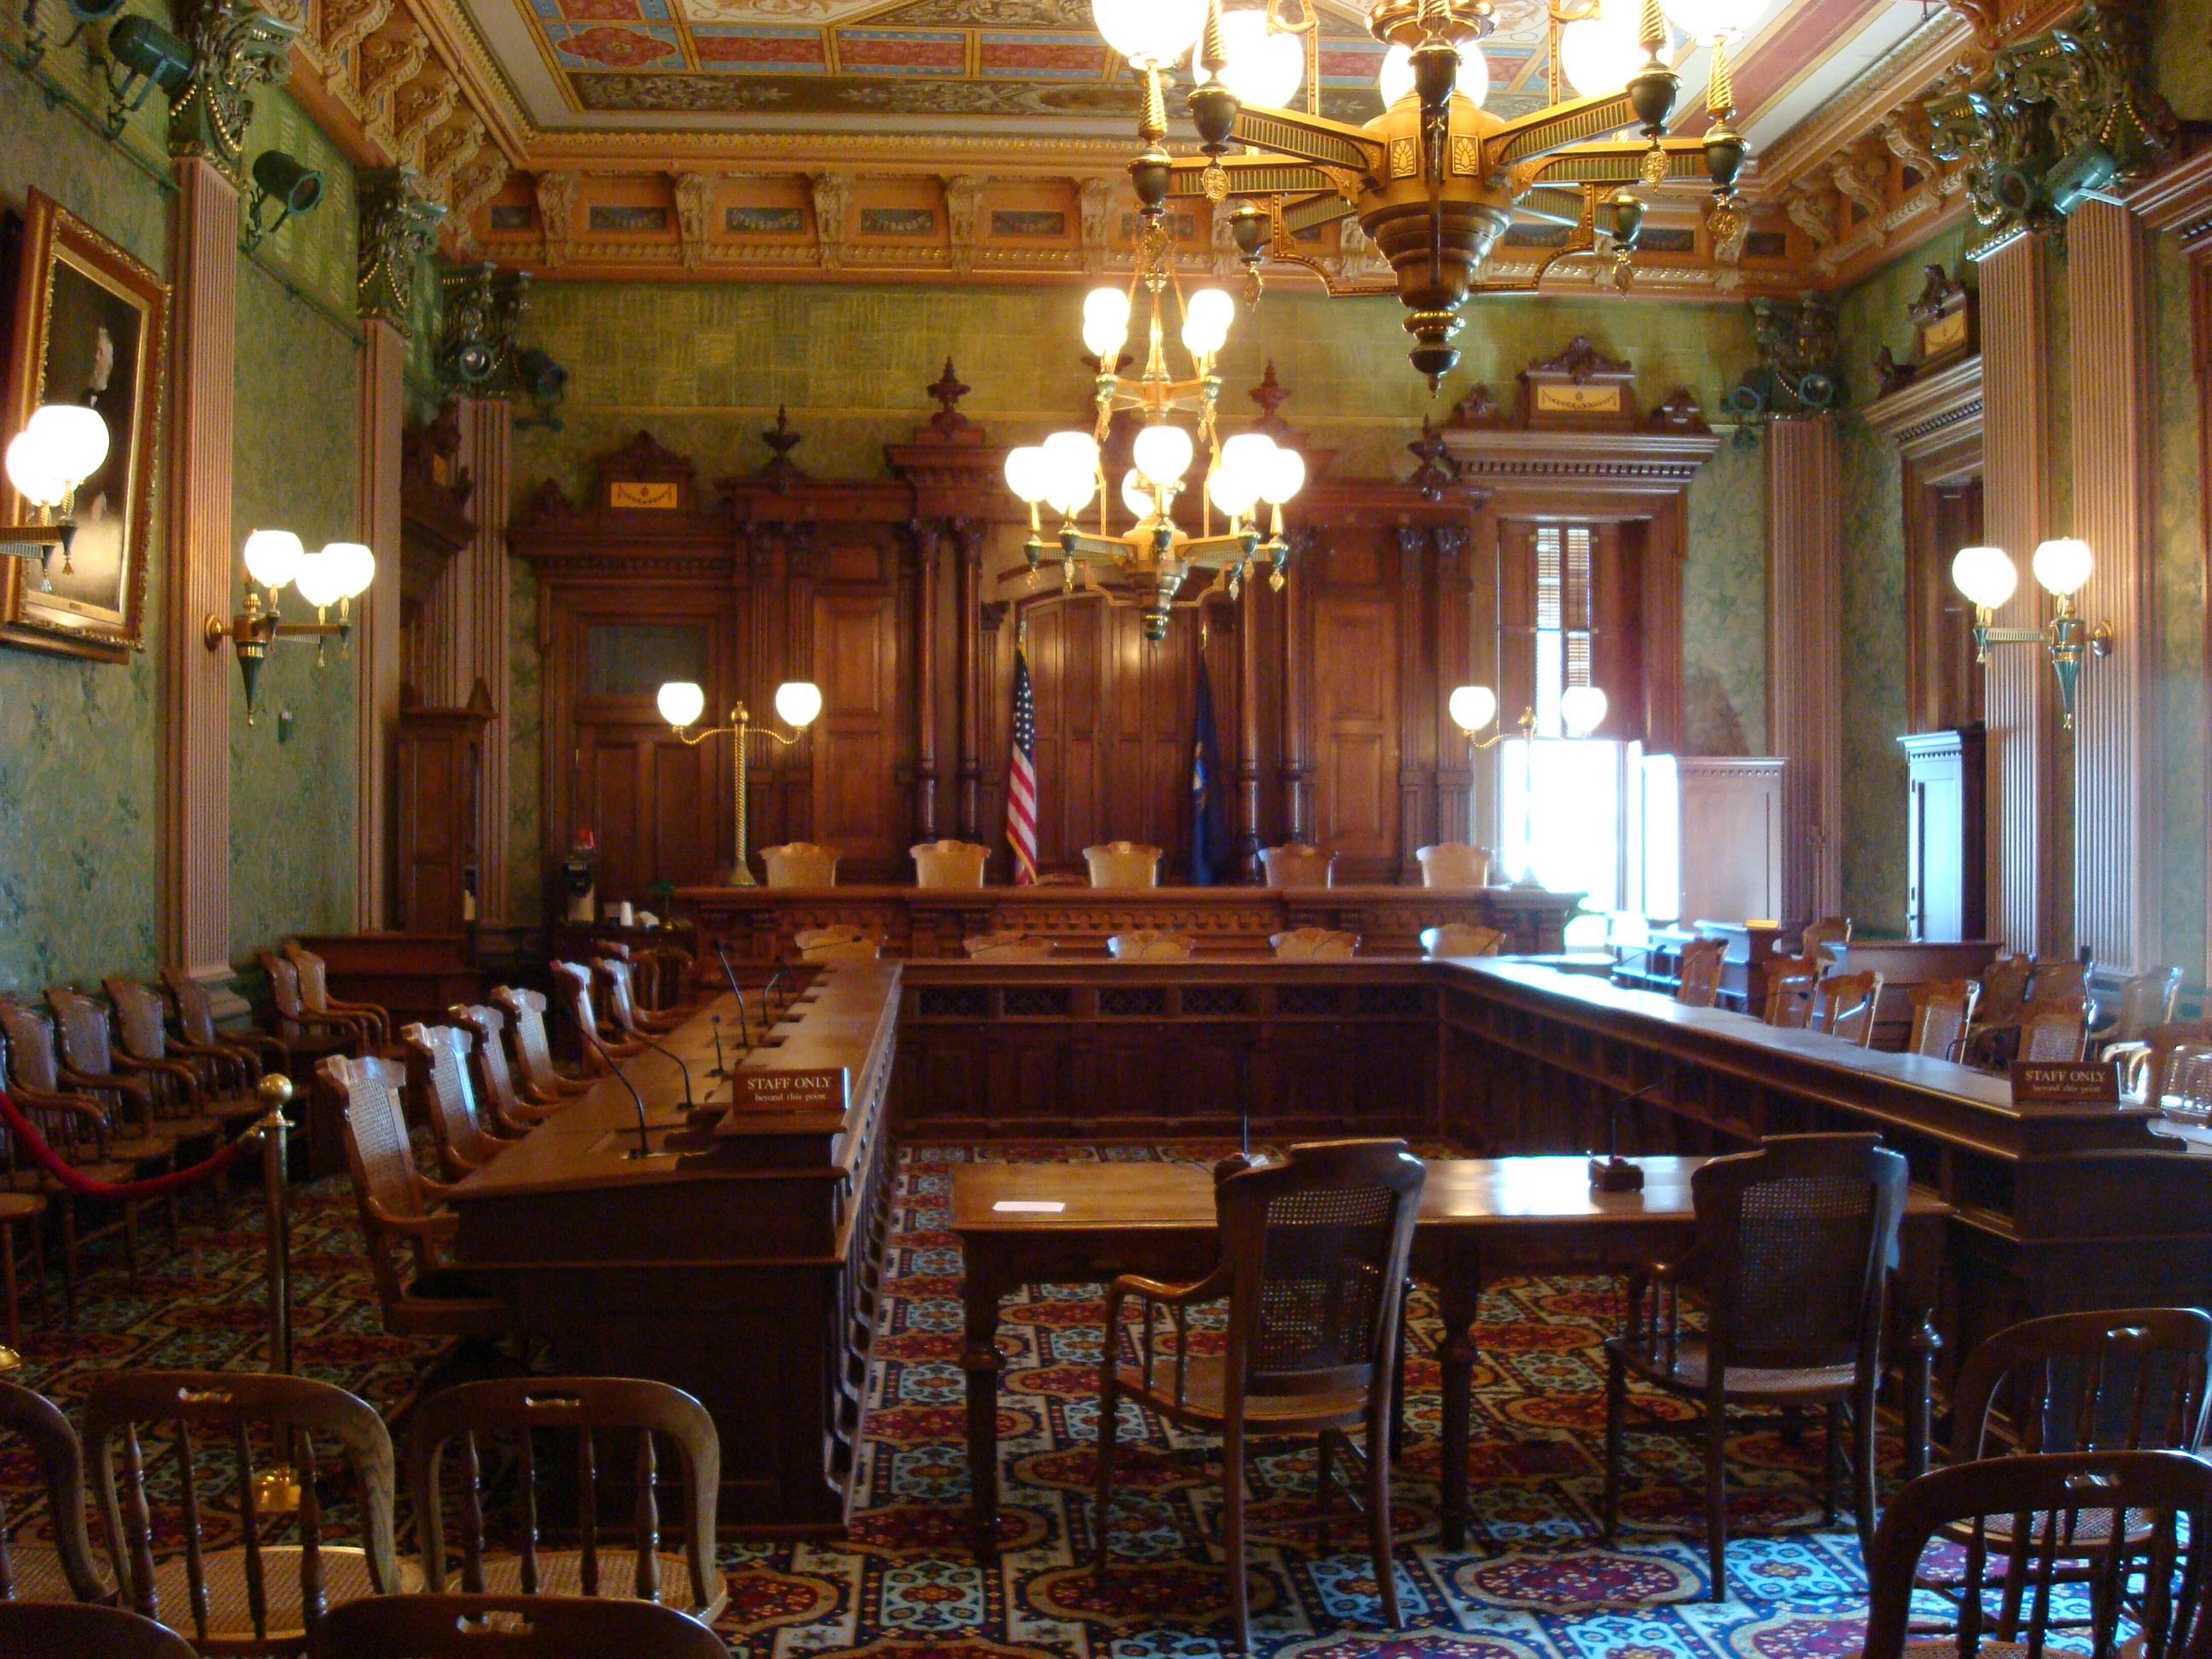 Michigan Supreme Court